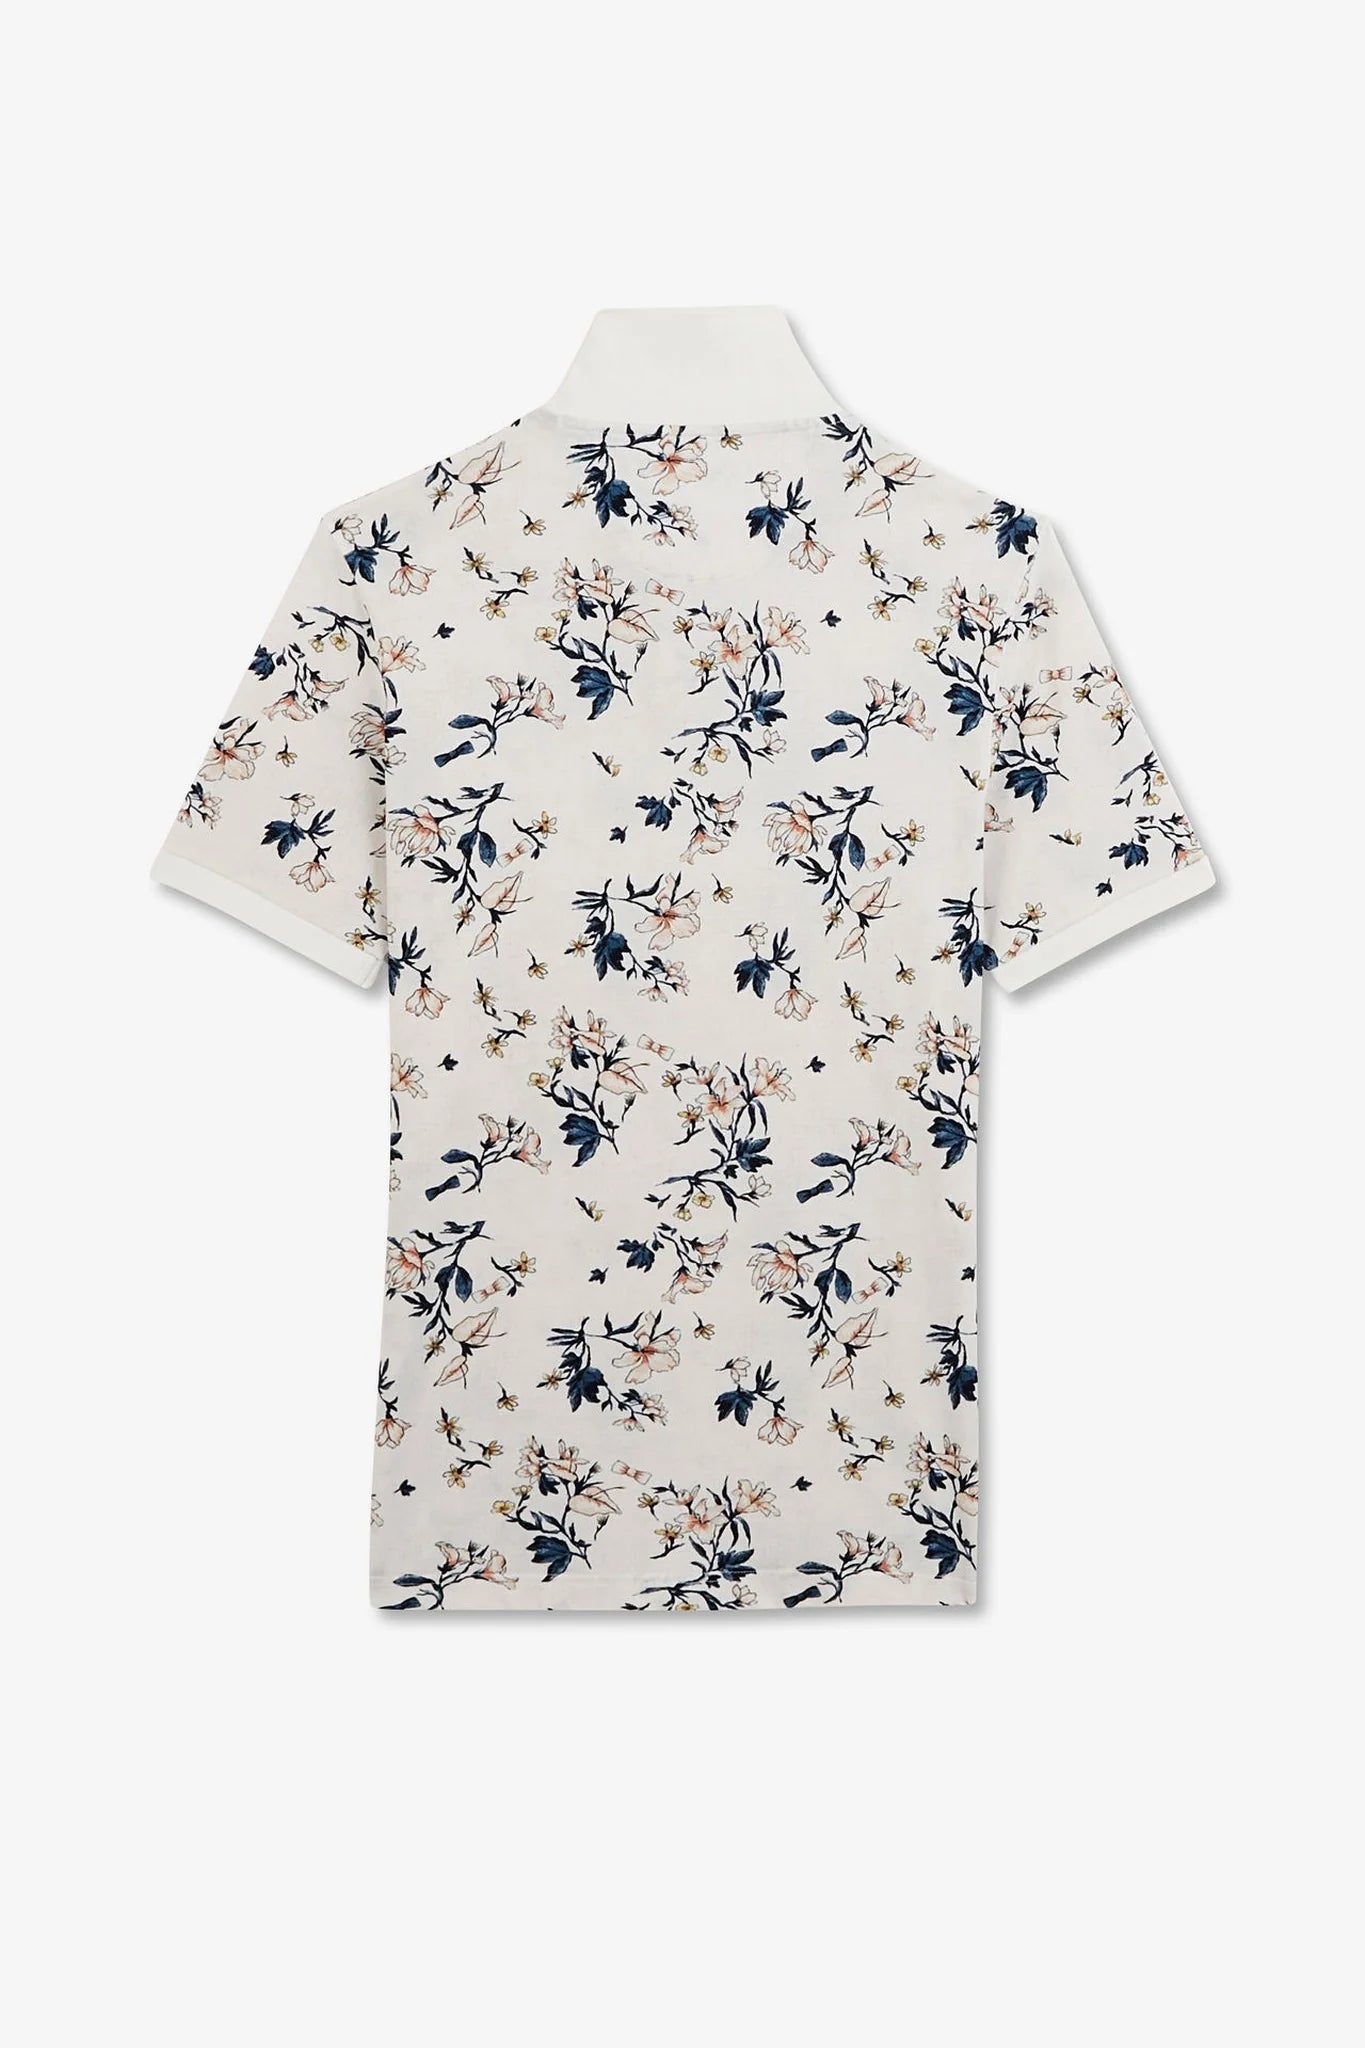 Eden Park Polo Shirt Exclusive Floral Print